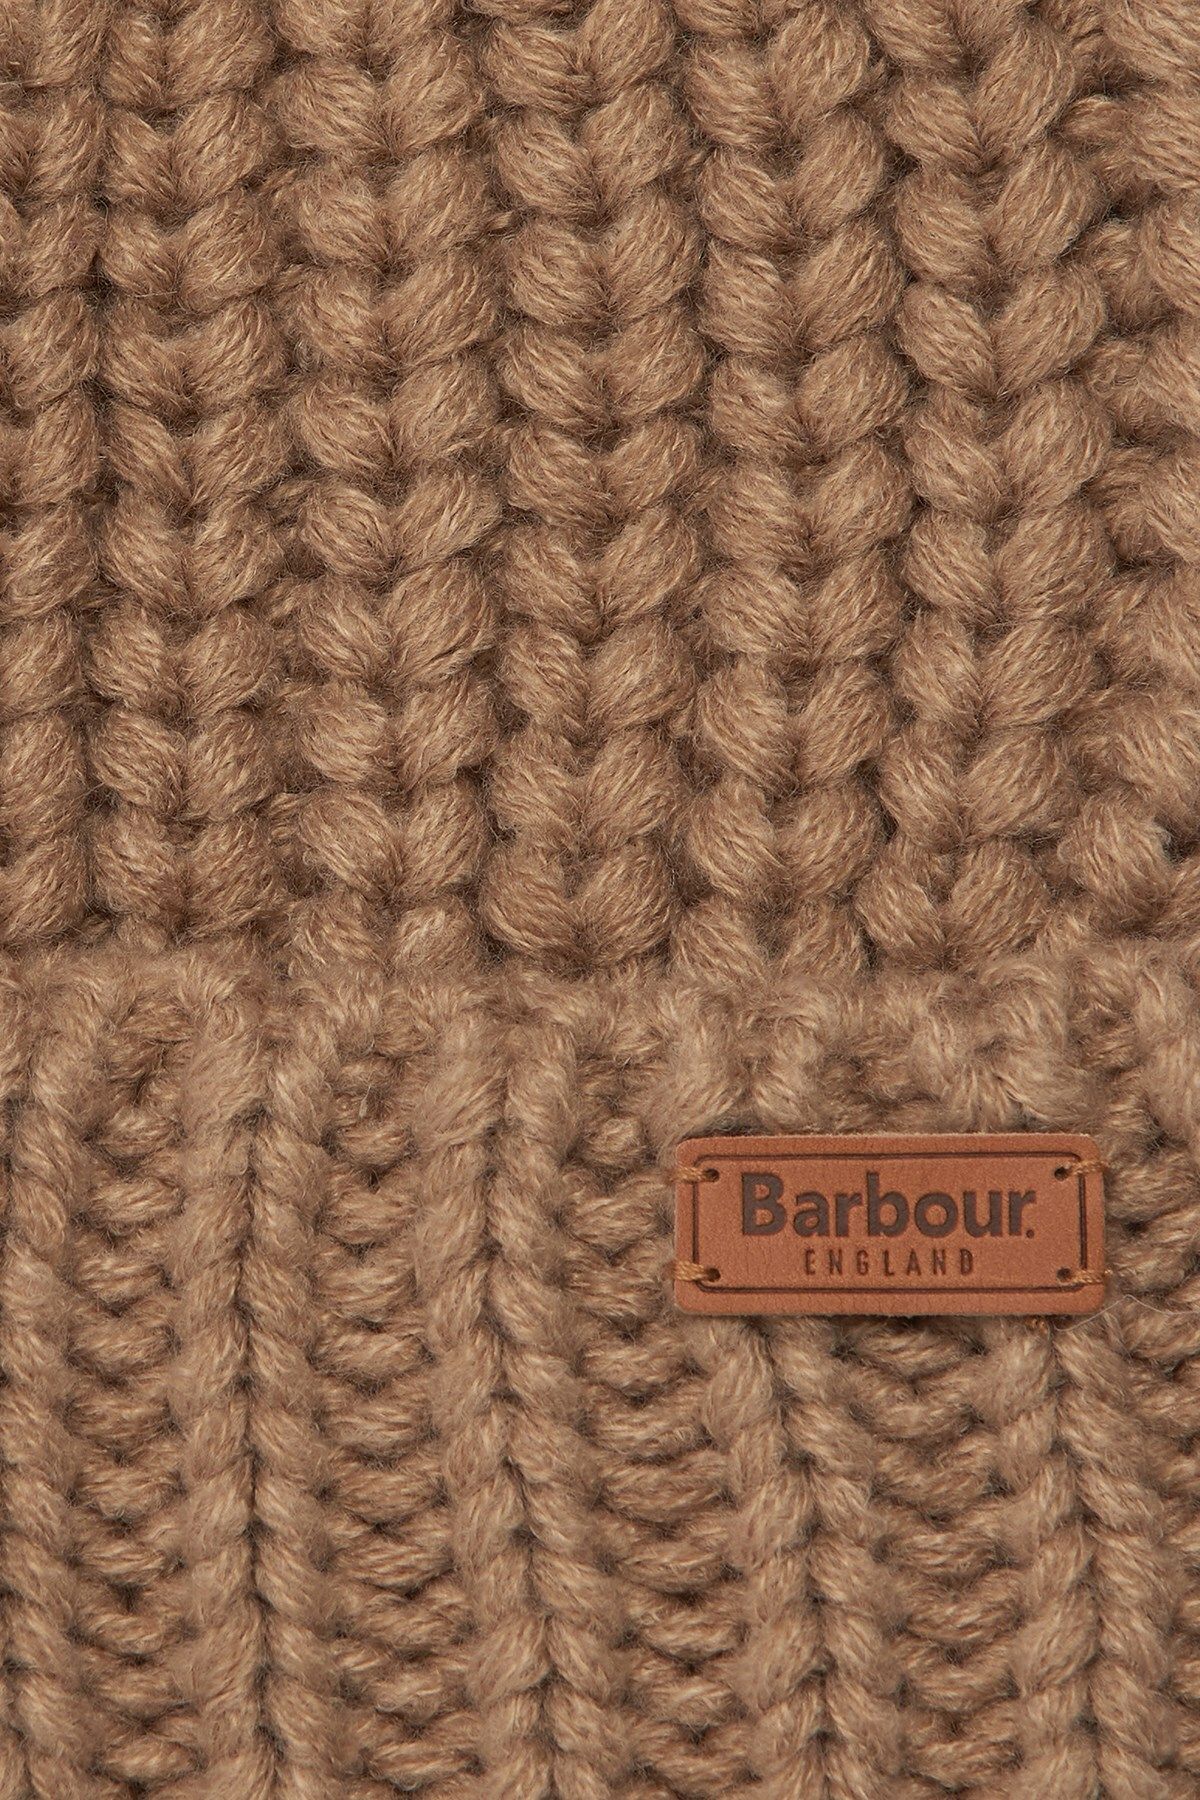 Barbour Saltburn beret be11 mink